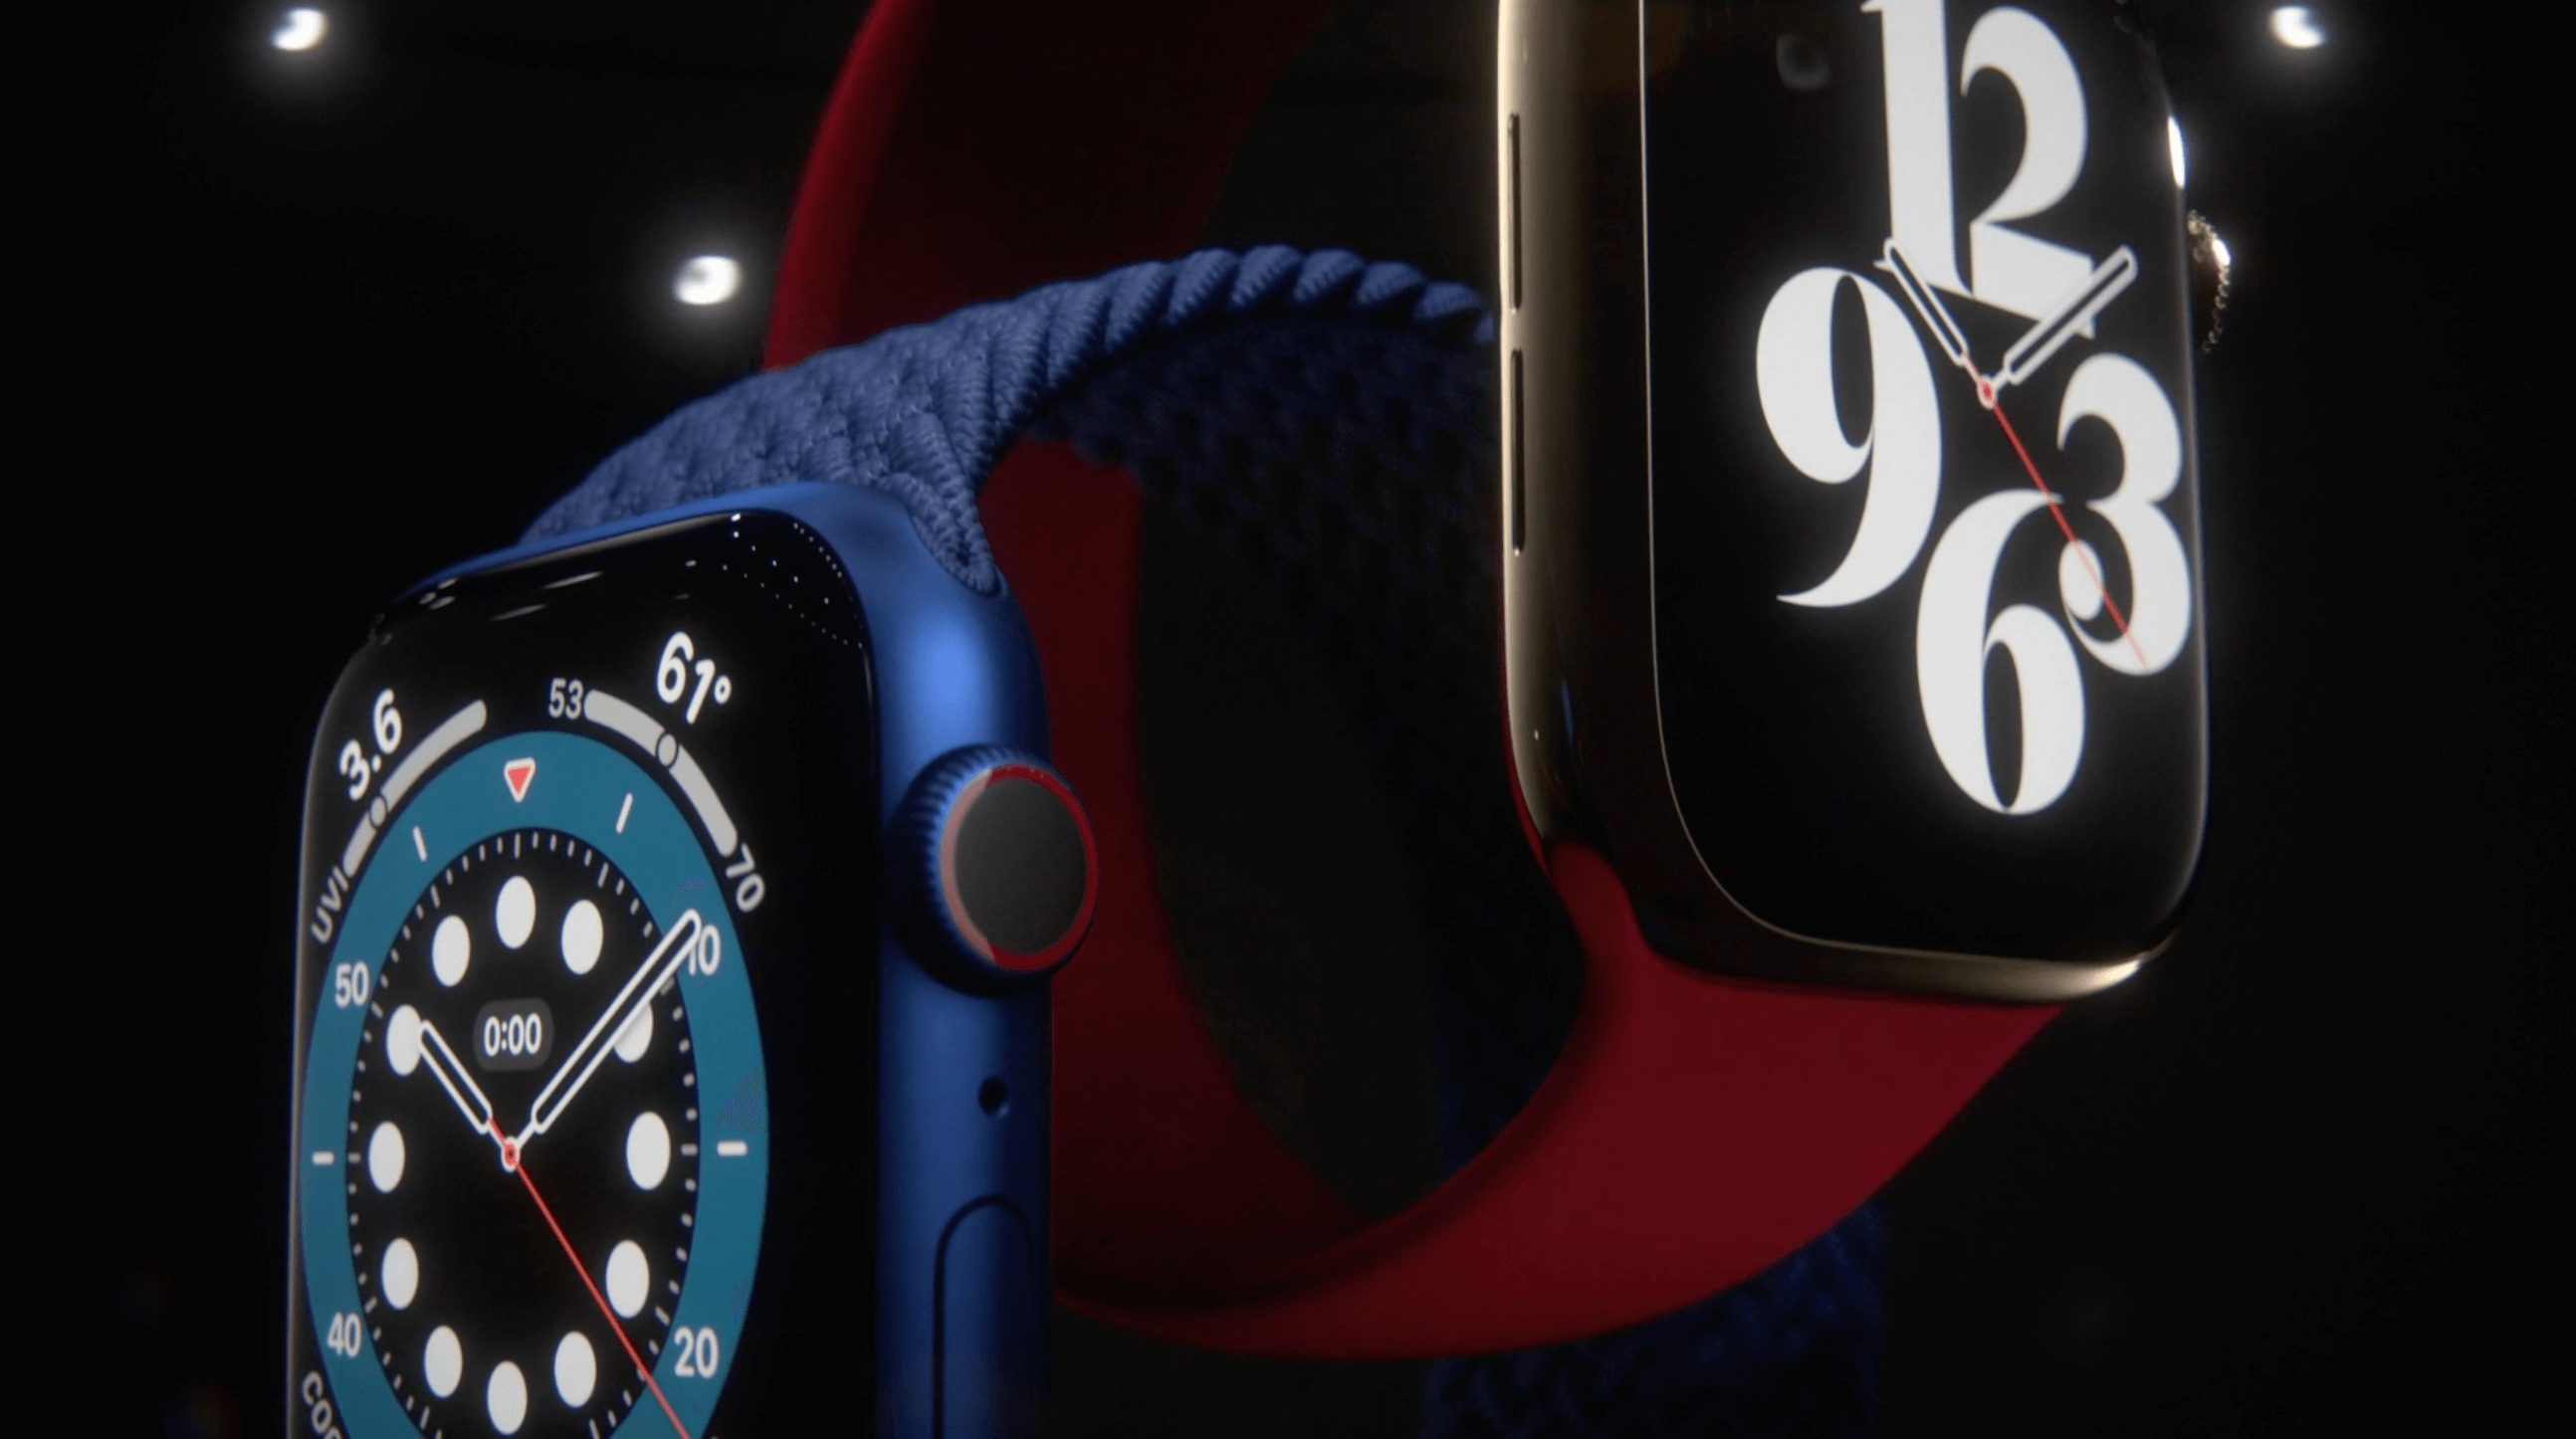 Все, что Apple анонсировала во время сентябрьского мероприятия: Apple Watch Series 6, новый iPad Air и многое другое.